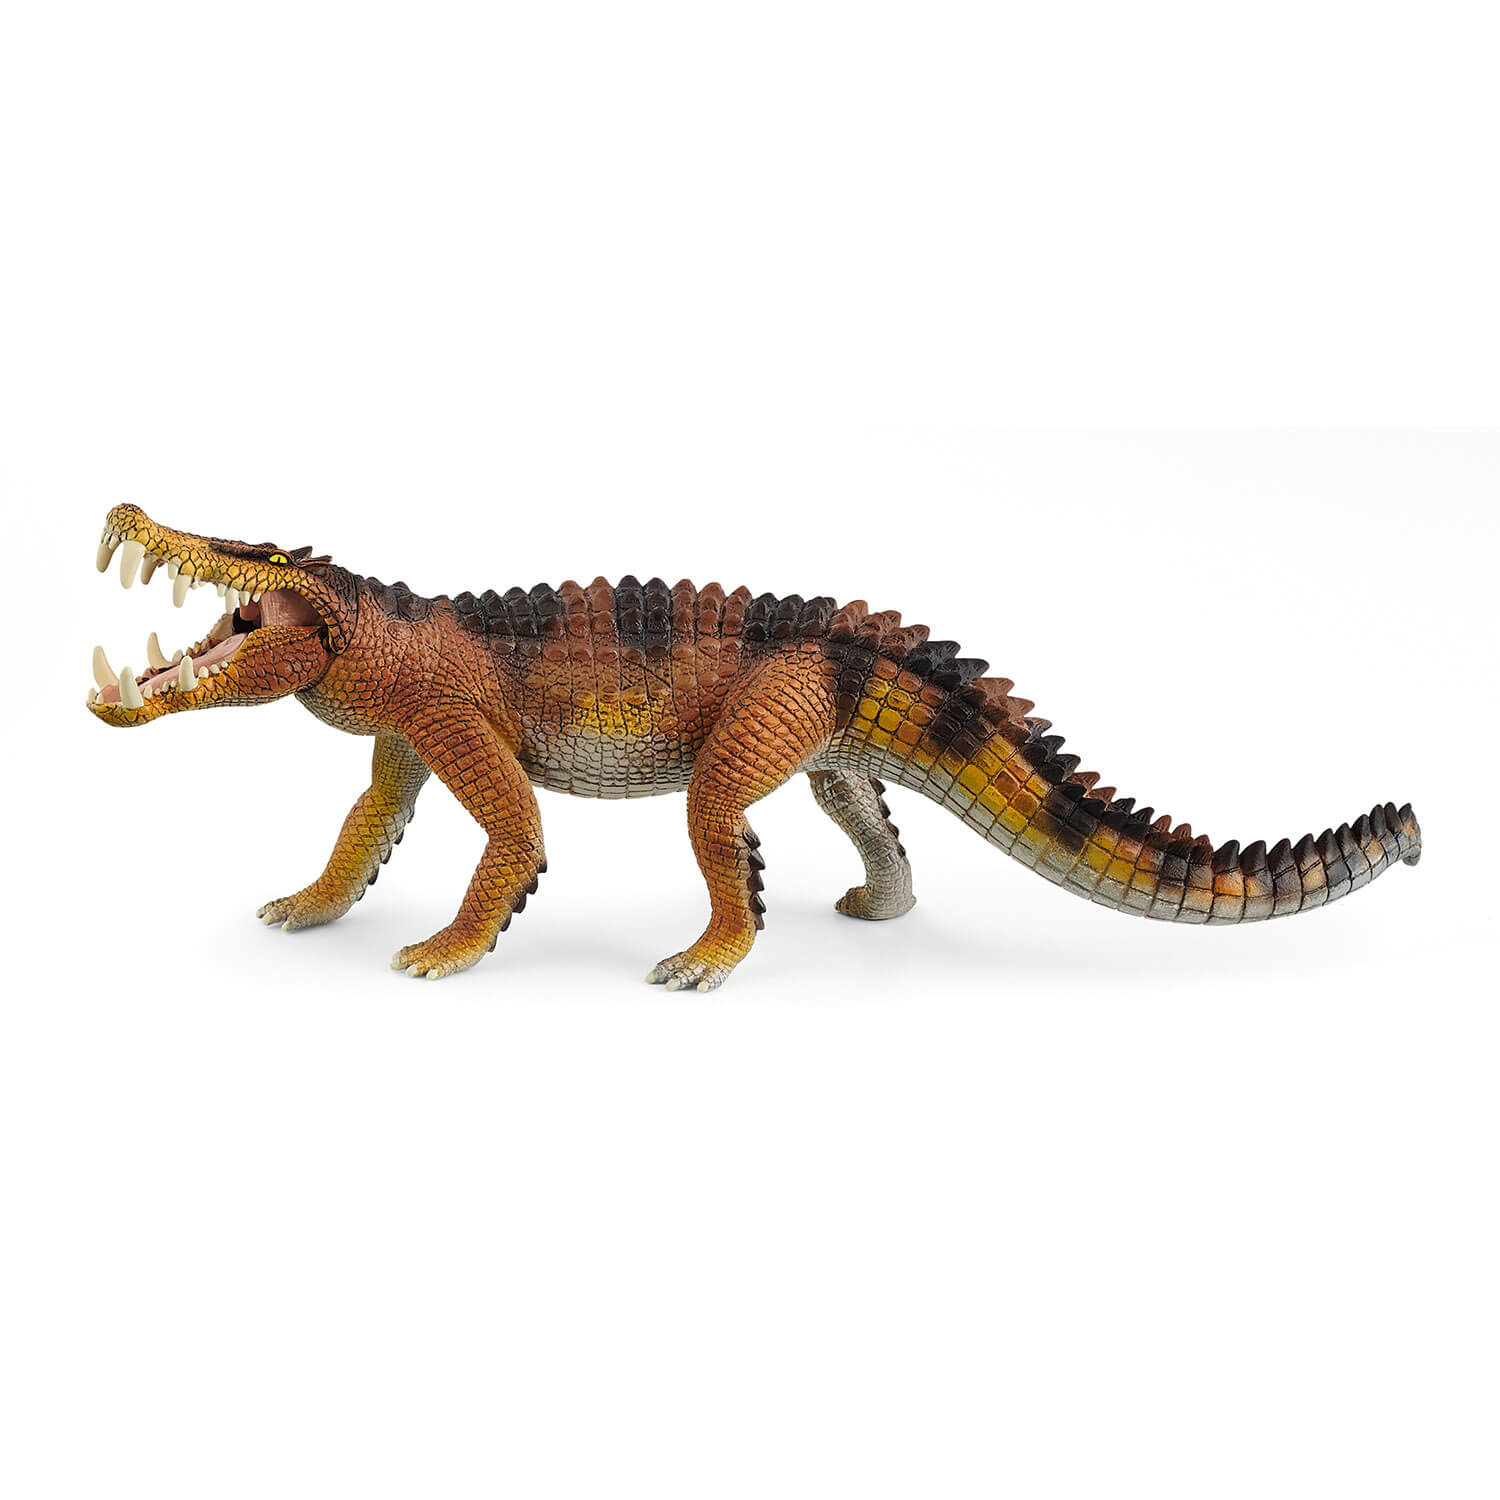 Schleich Dinosaurs Kaprosuchus Figure (15025)